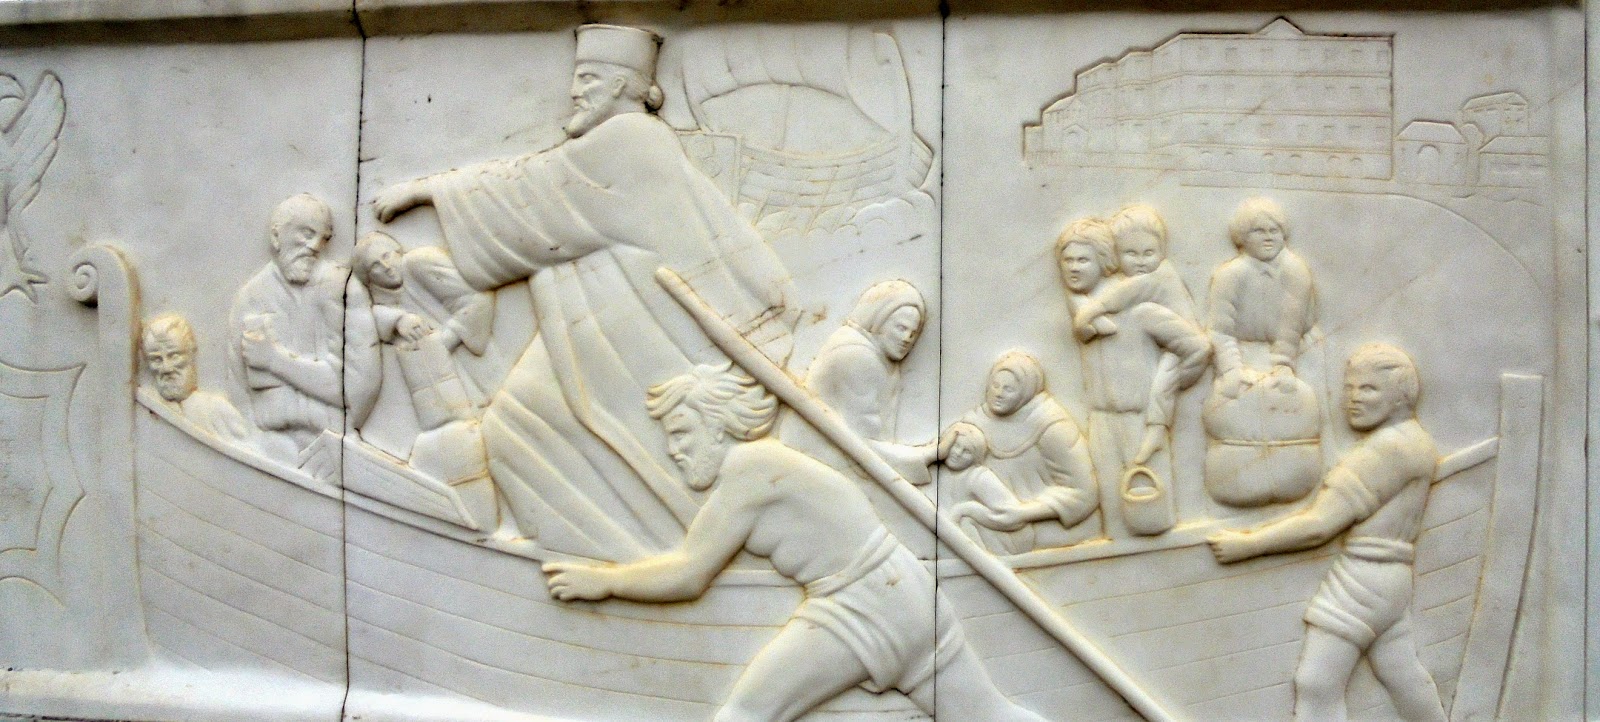 το μνημείο του Ποντιακού Ελληνισμού στην Ξηρολίμνη της Κοζάνης